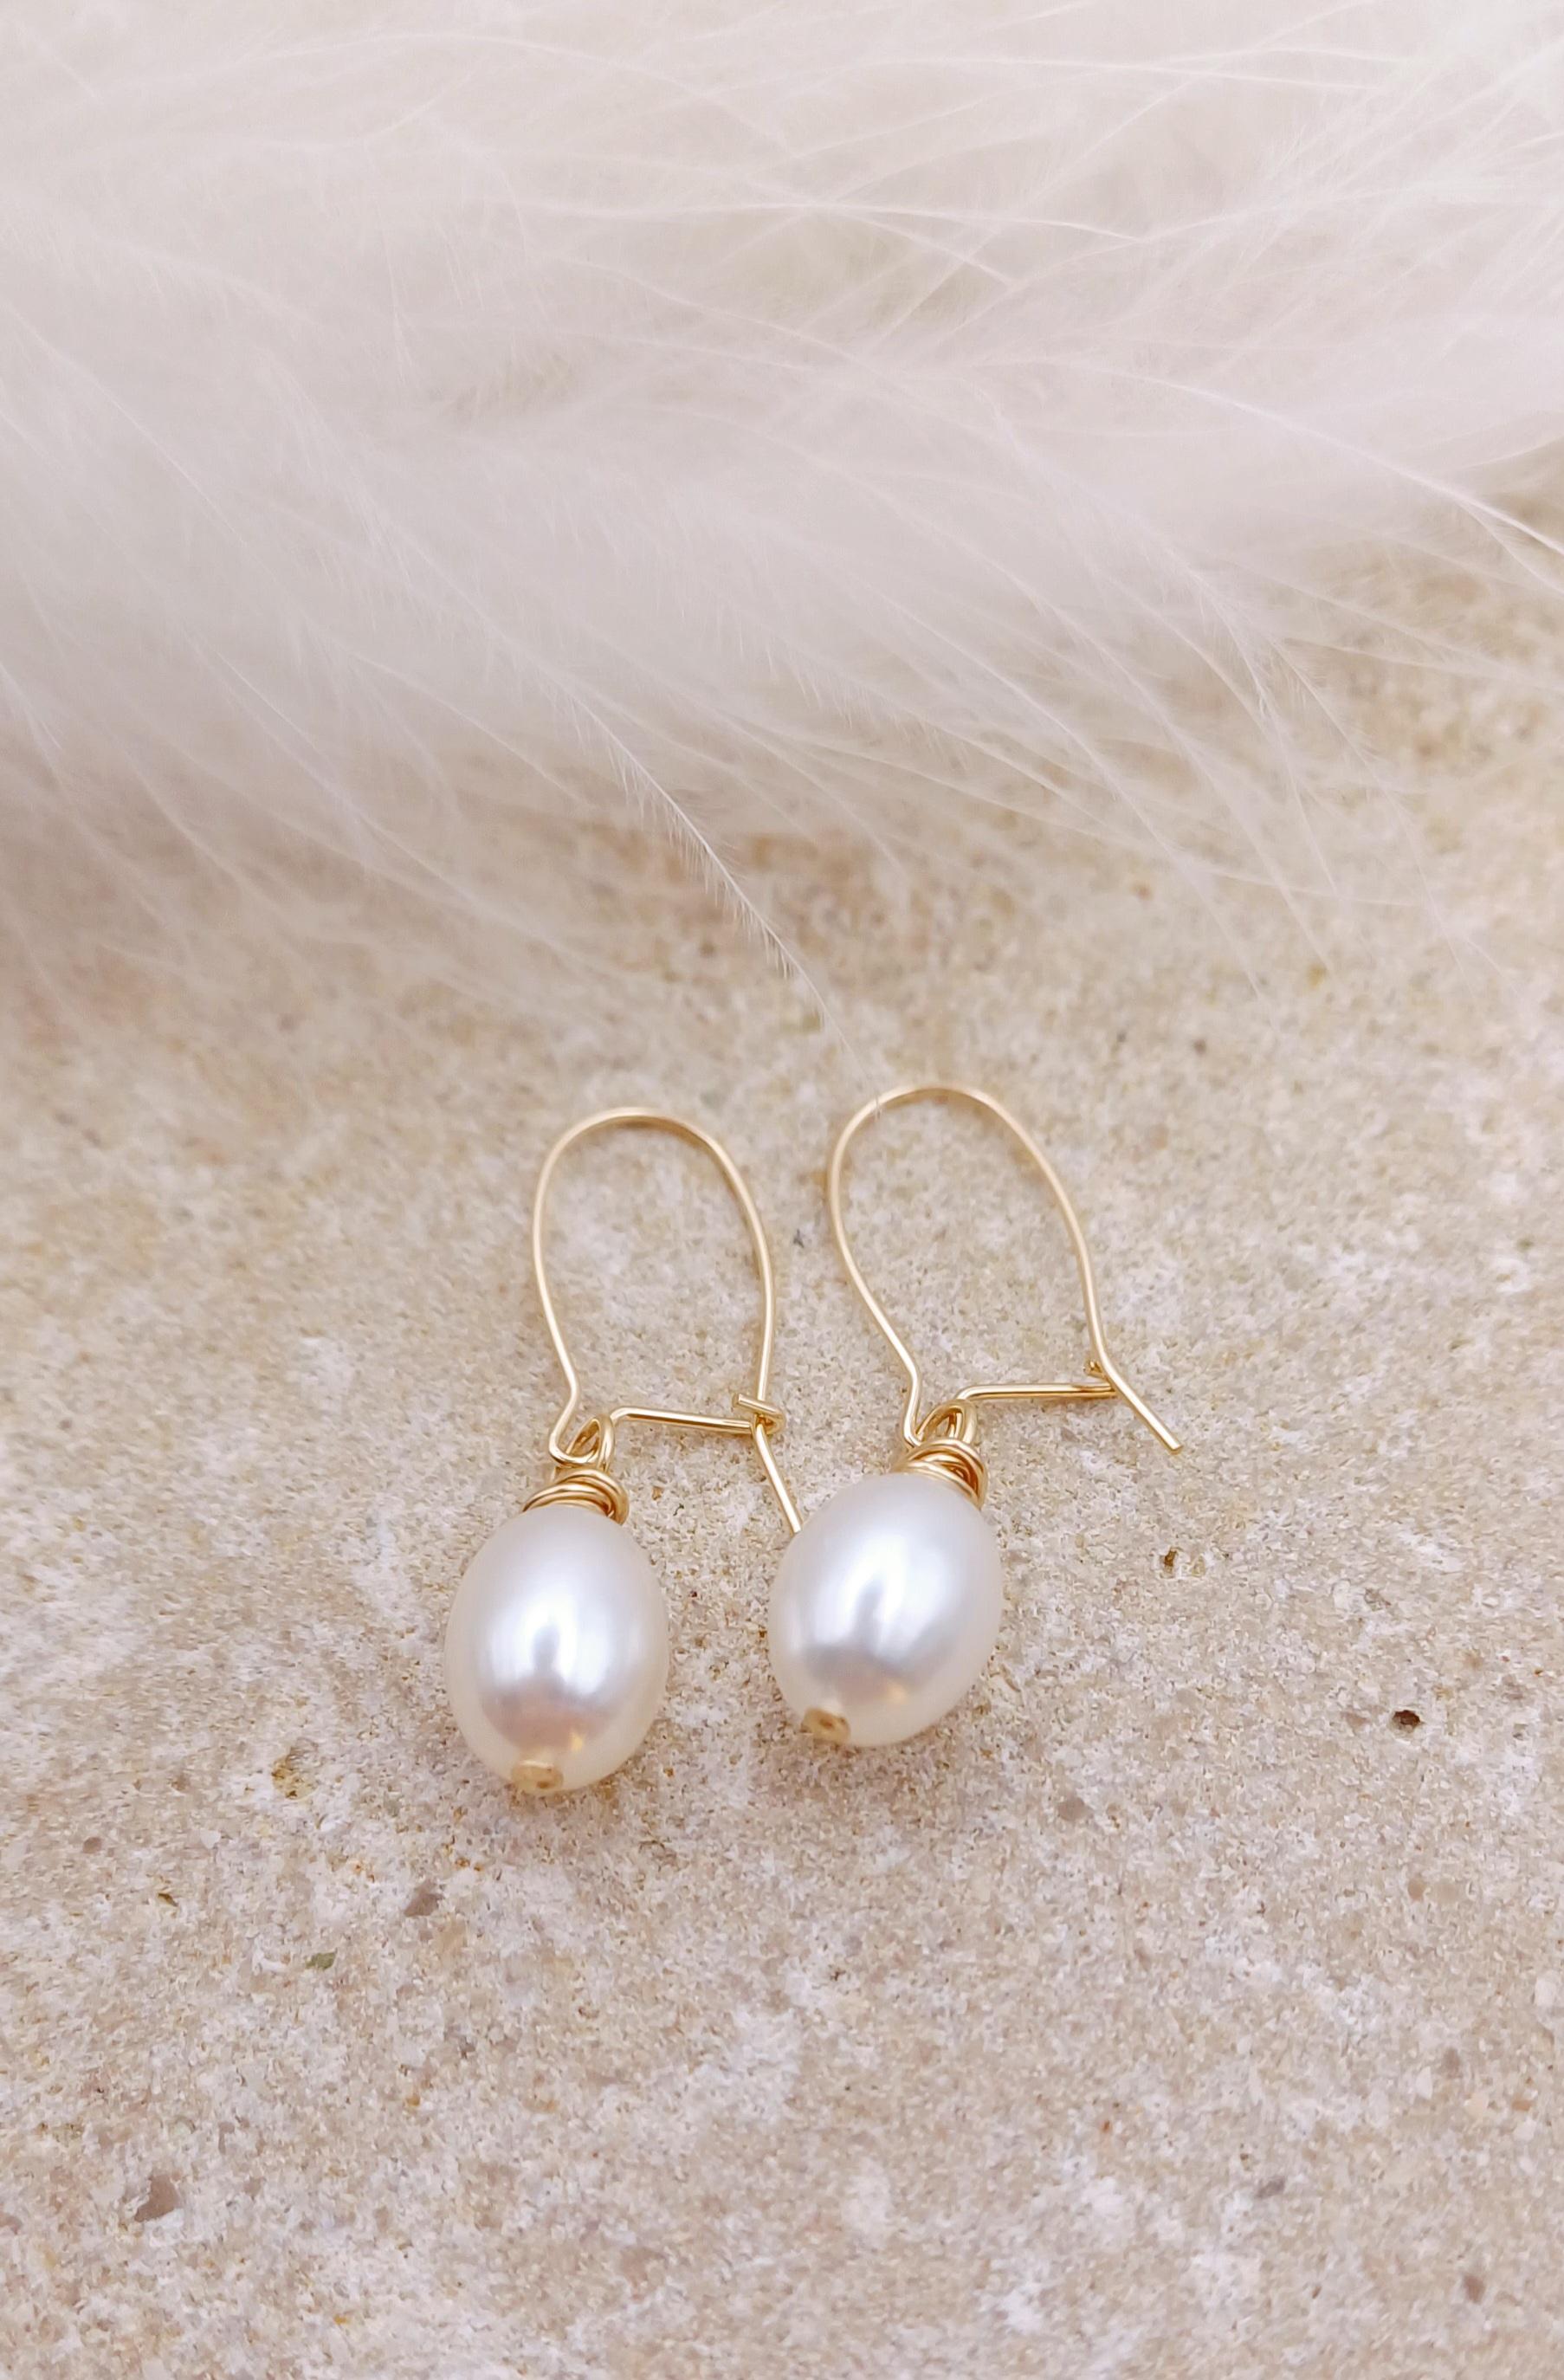 EARRINGS - 14k Gold Filled Pearl Drop Earrings